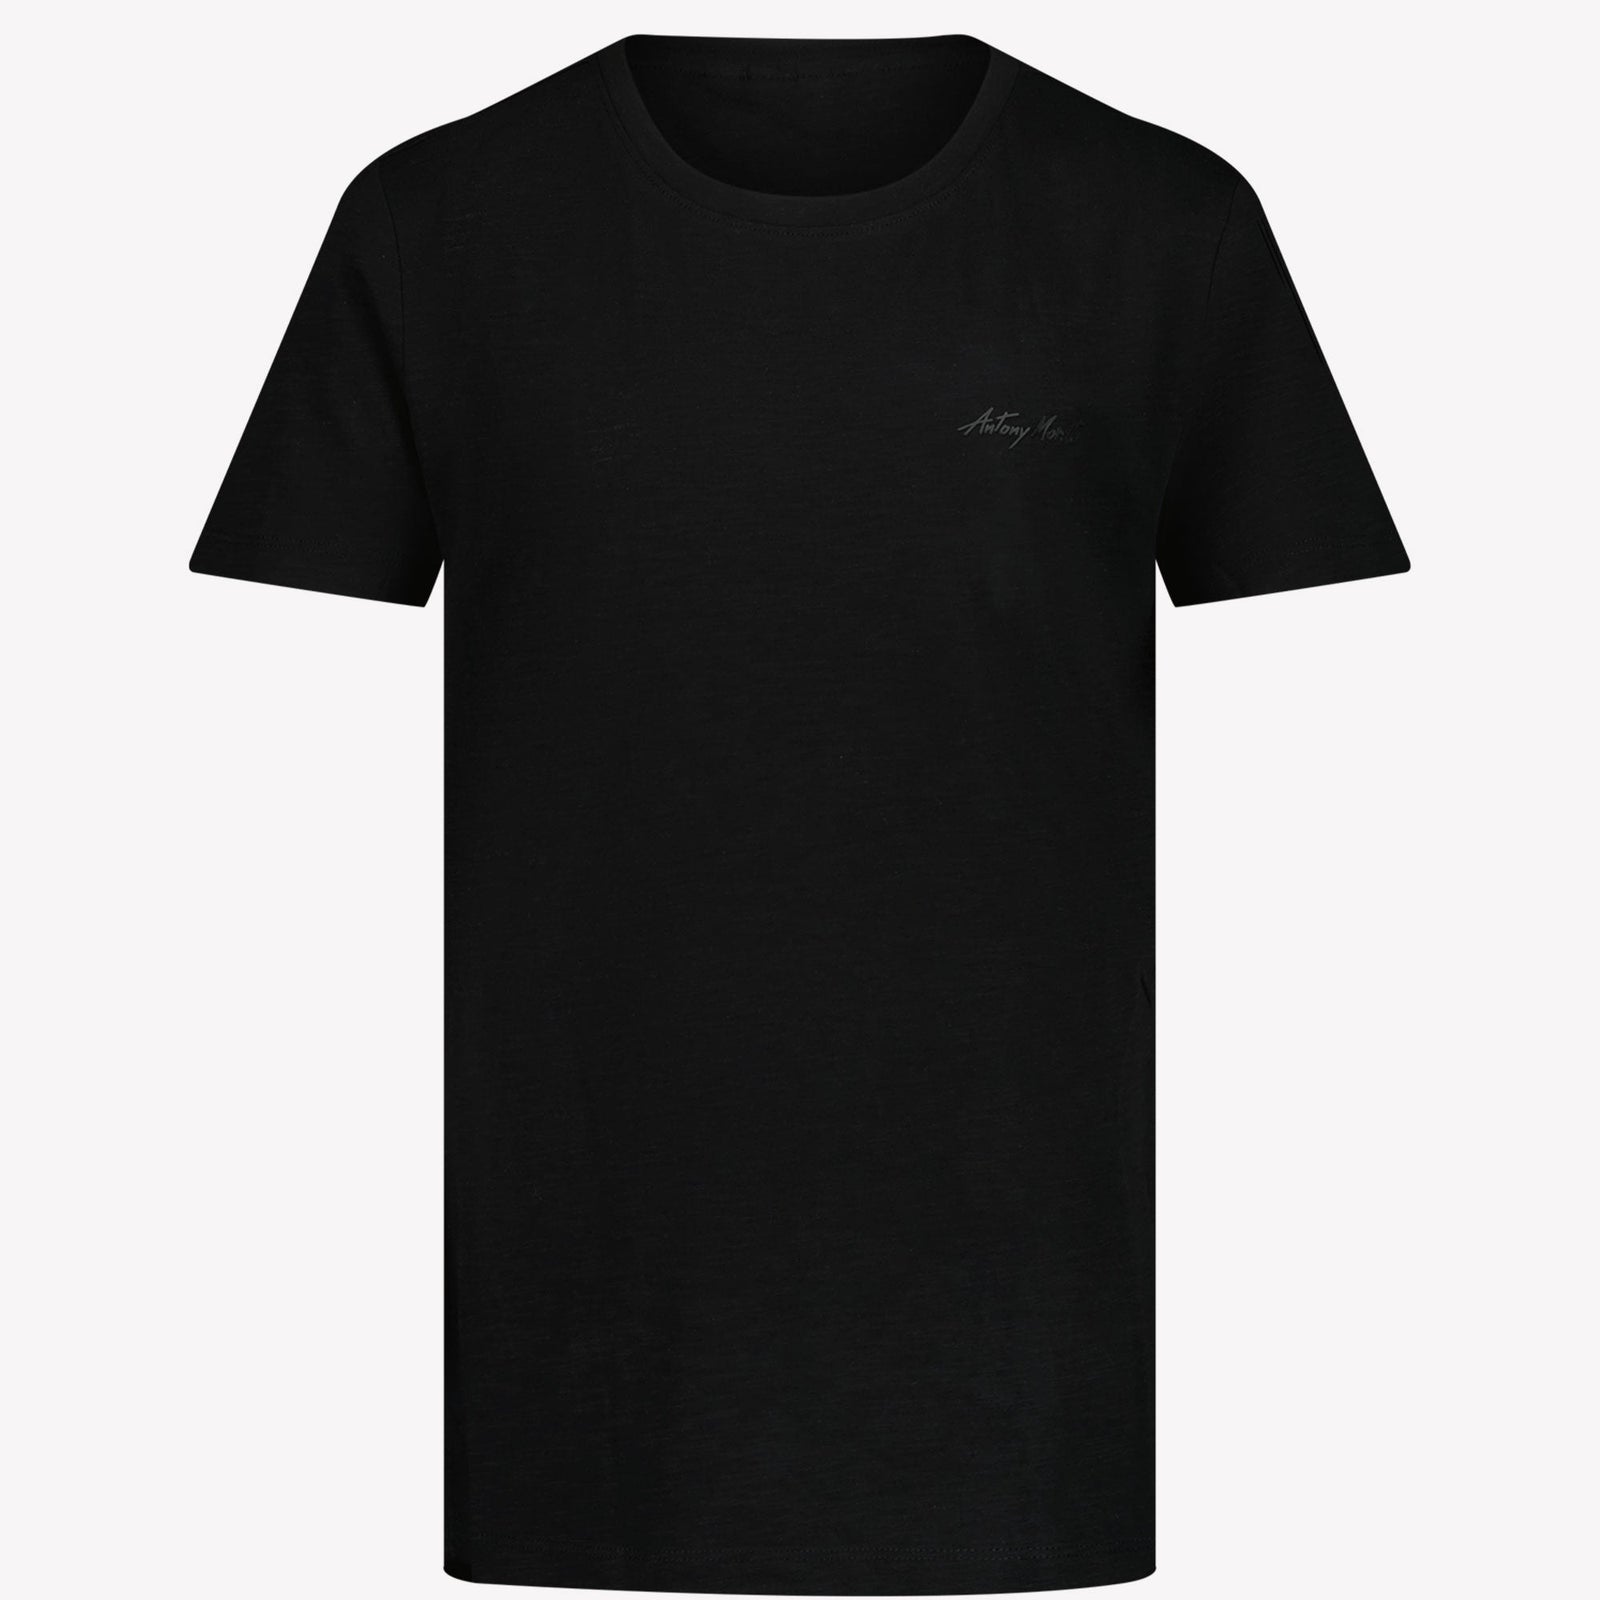 Antony Morato Kinder Jongens T-shirt Zwart 4Y